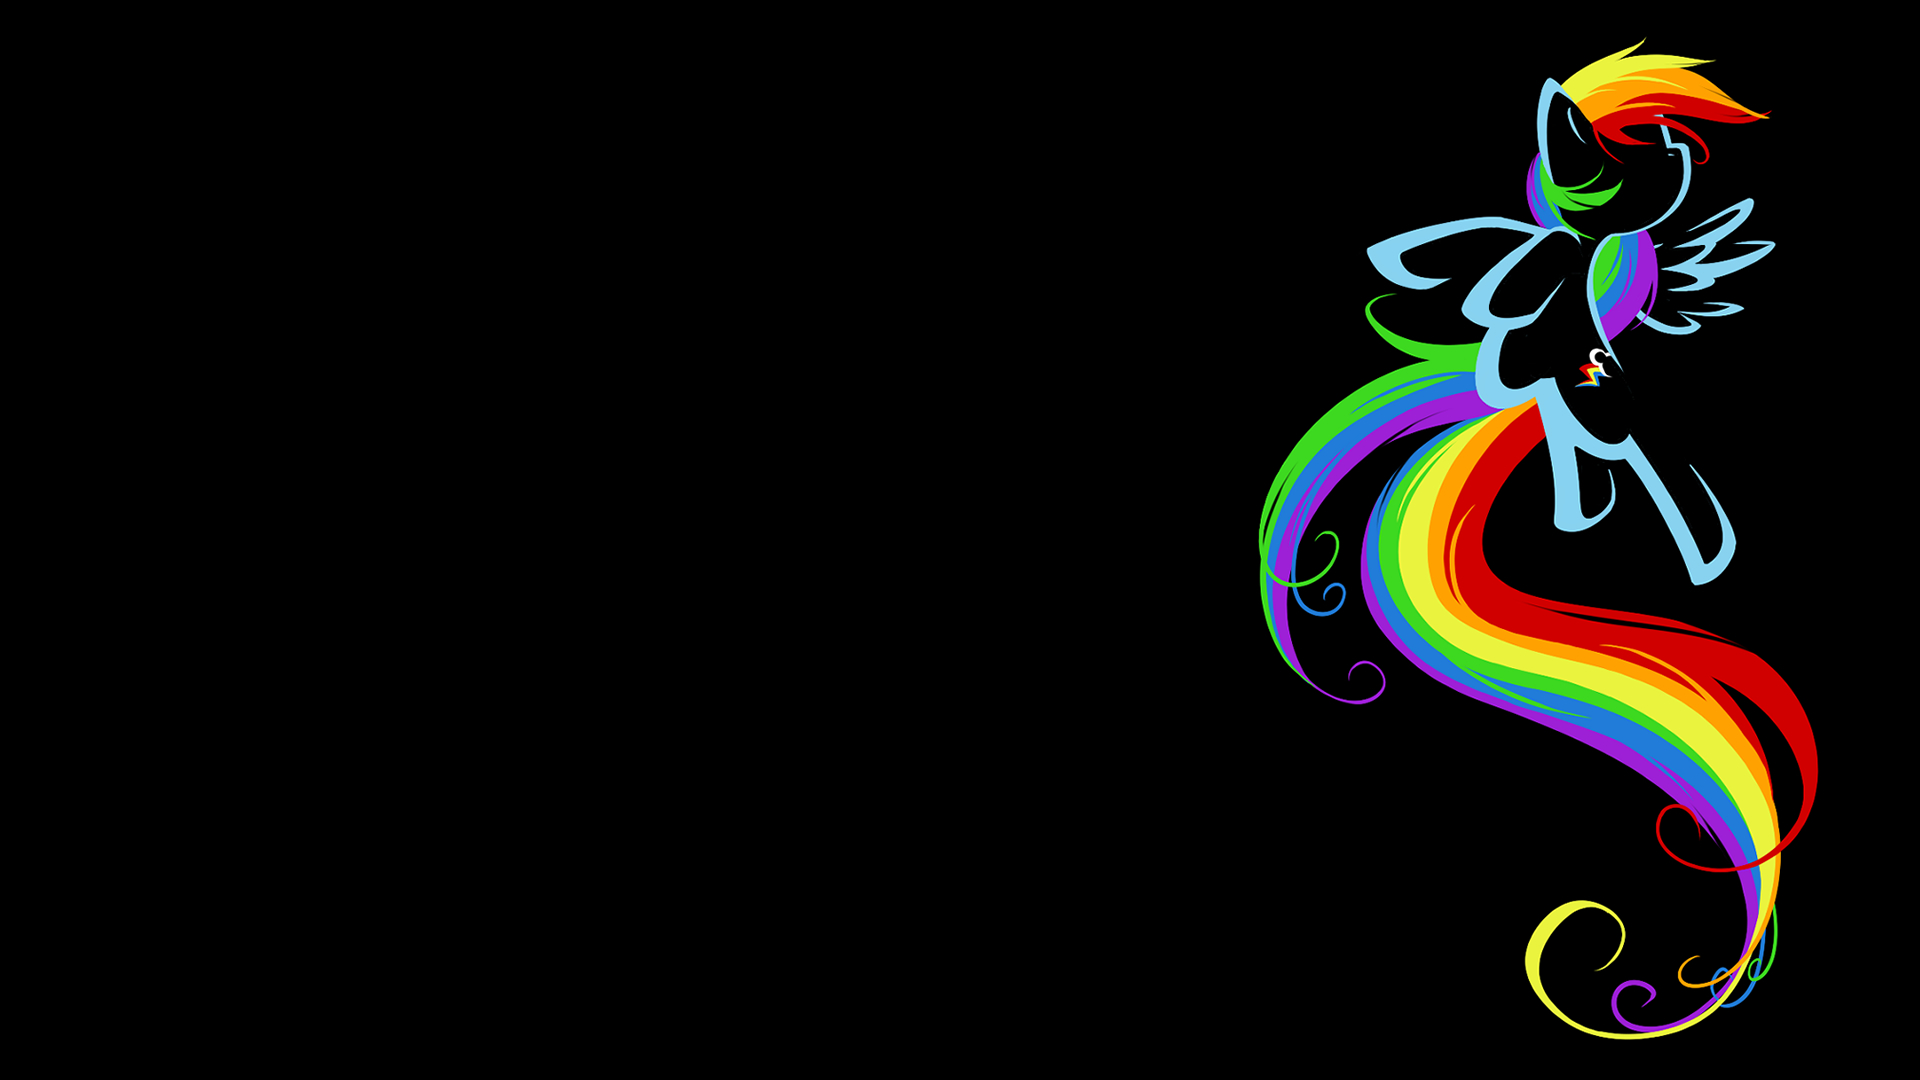 Nền đẹp Rainbow Dash là một trong những hình ảnh nền đẹp nhất cho máy tính cá nhân của bạn. Hãy xem hình ảnh liên quan để tìm kiếm những màu sắc tươi sáng, tinh tế và phù hợp với phong cách của bạn.